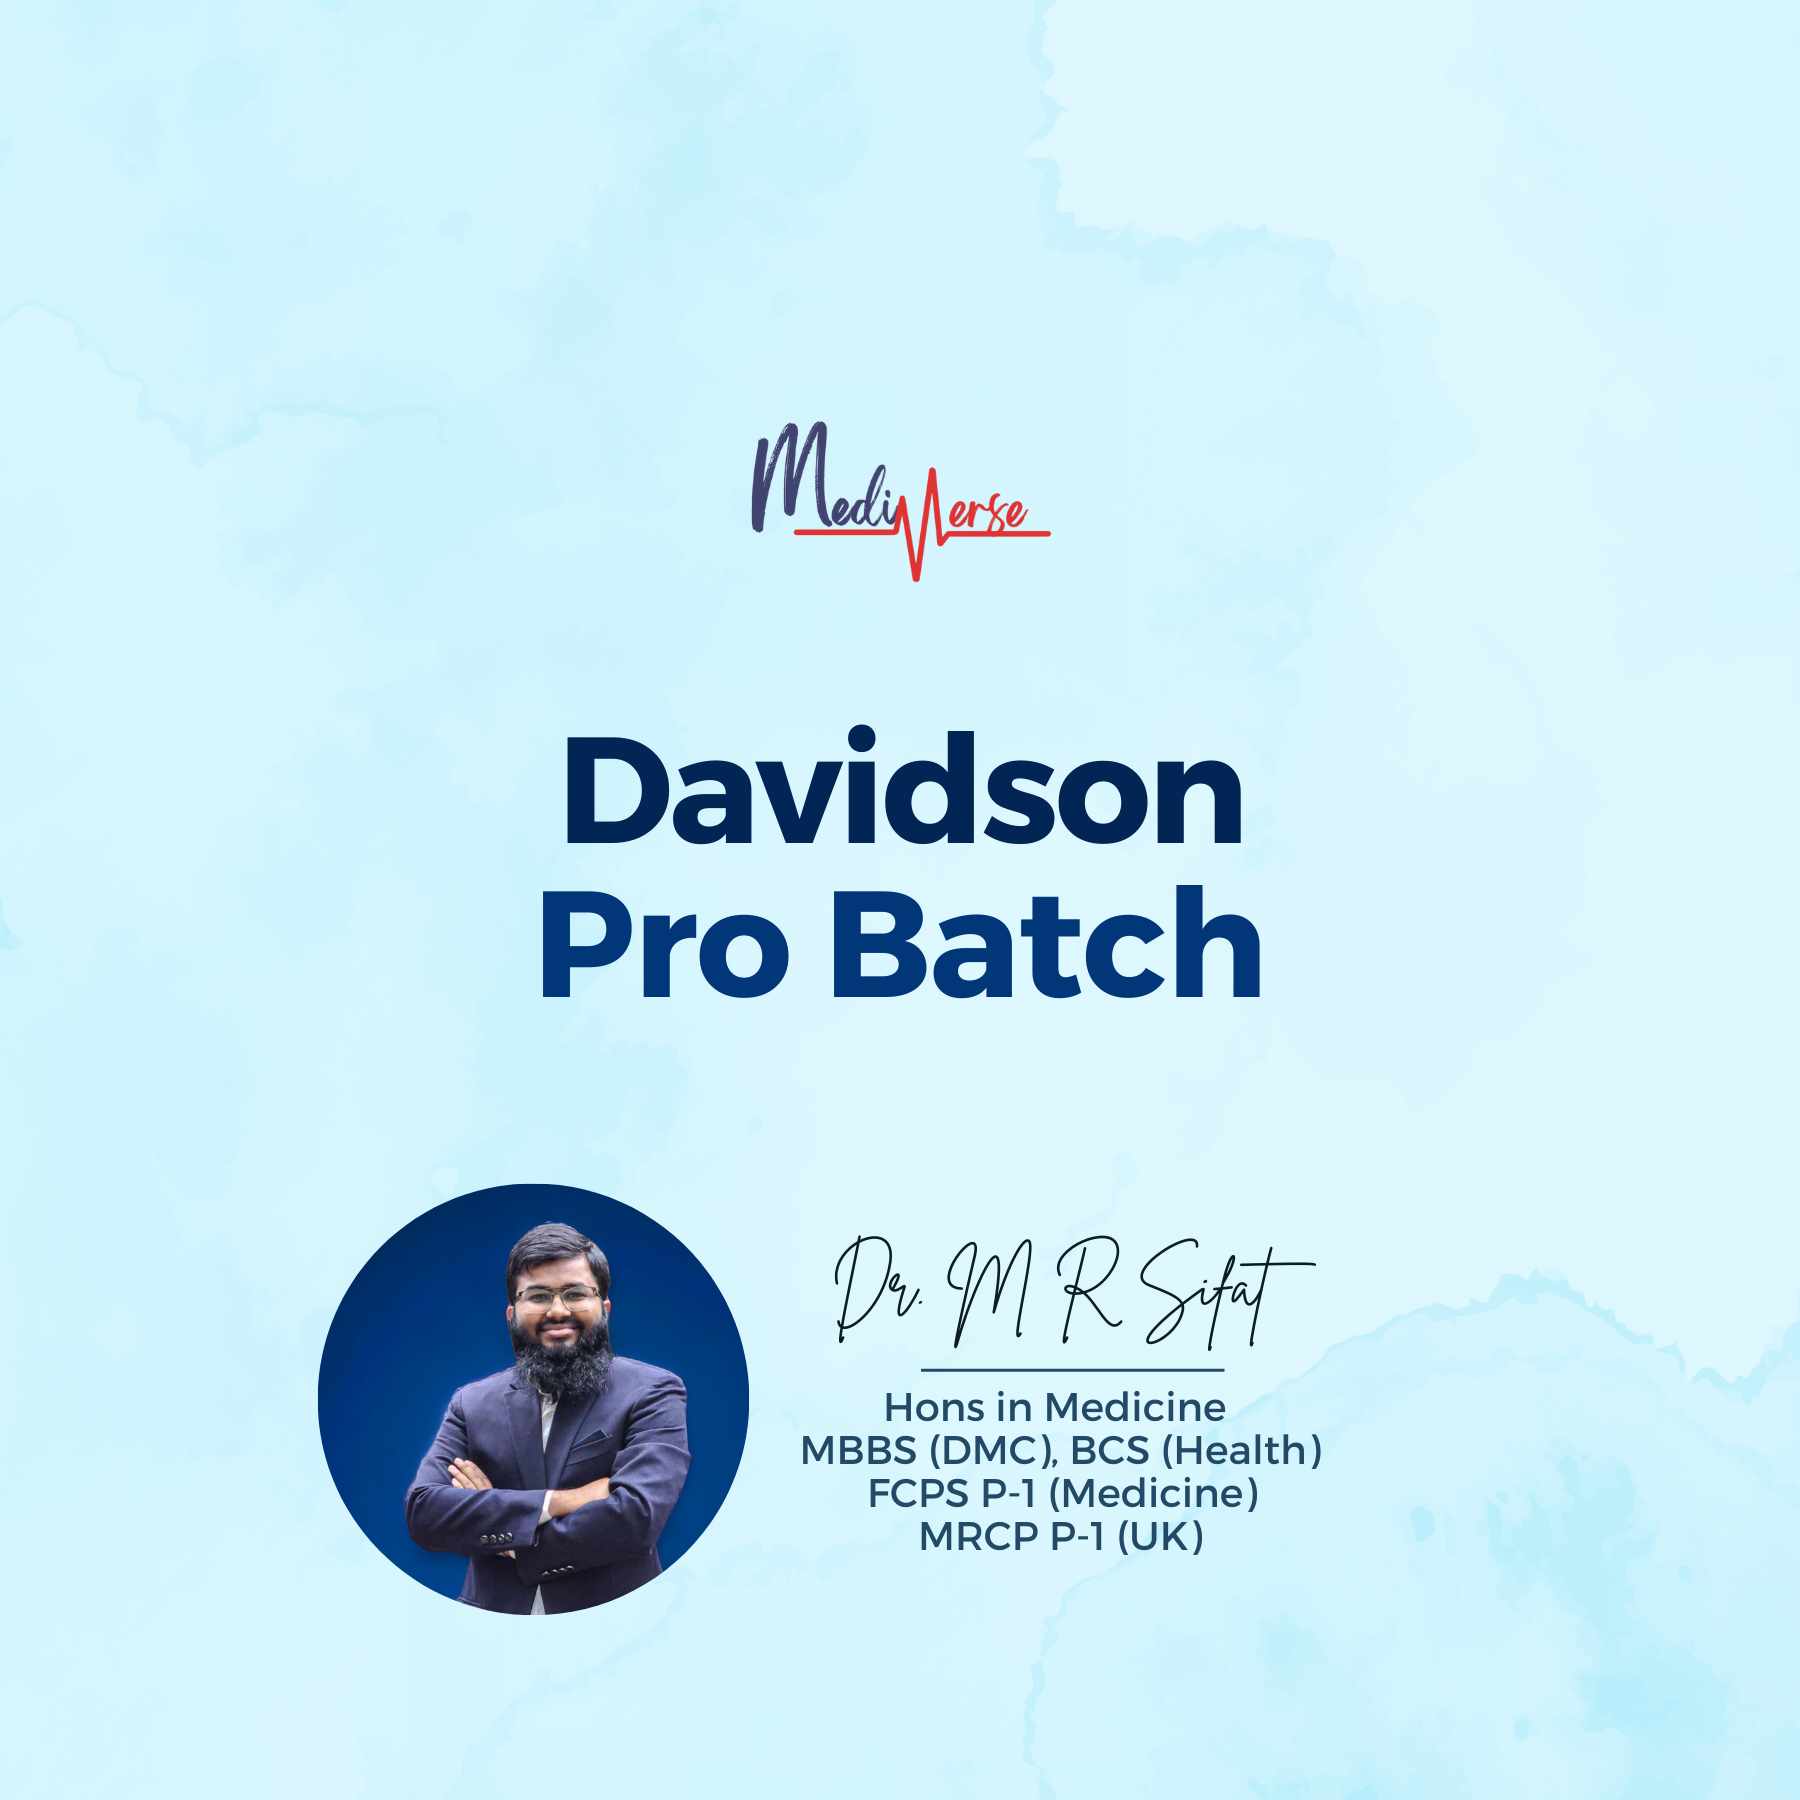 Davidson Pro Batch